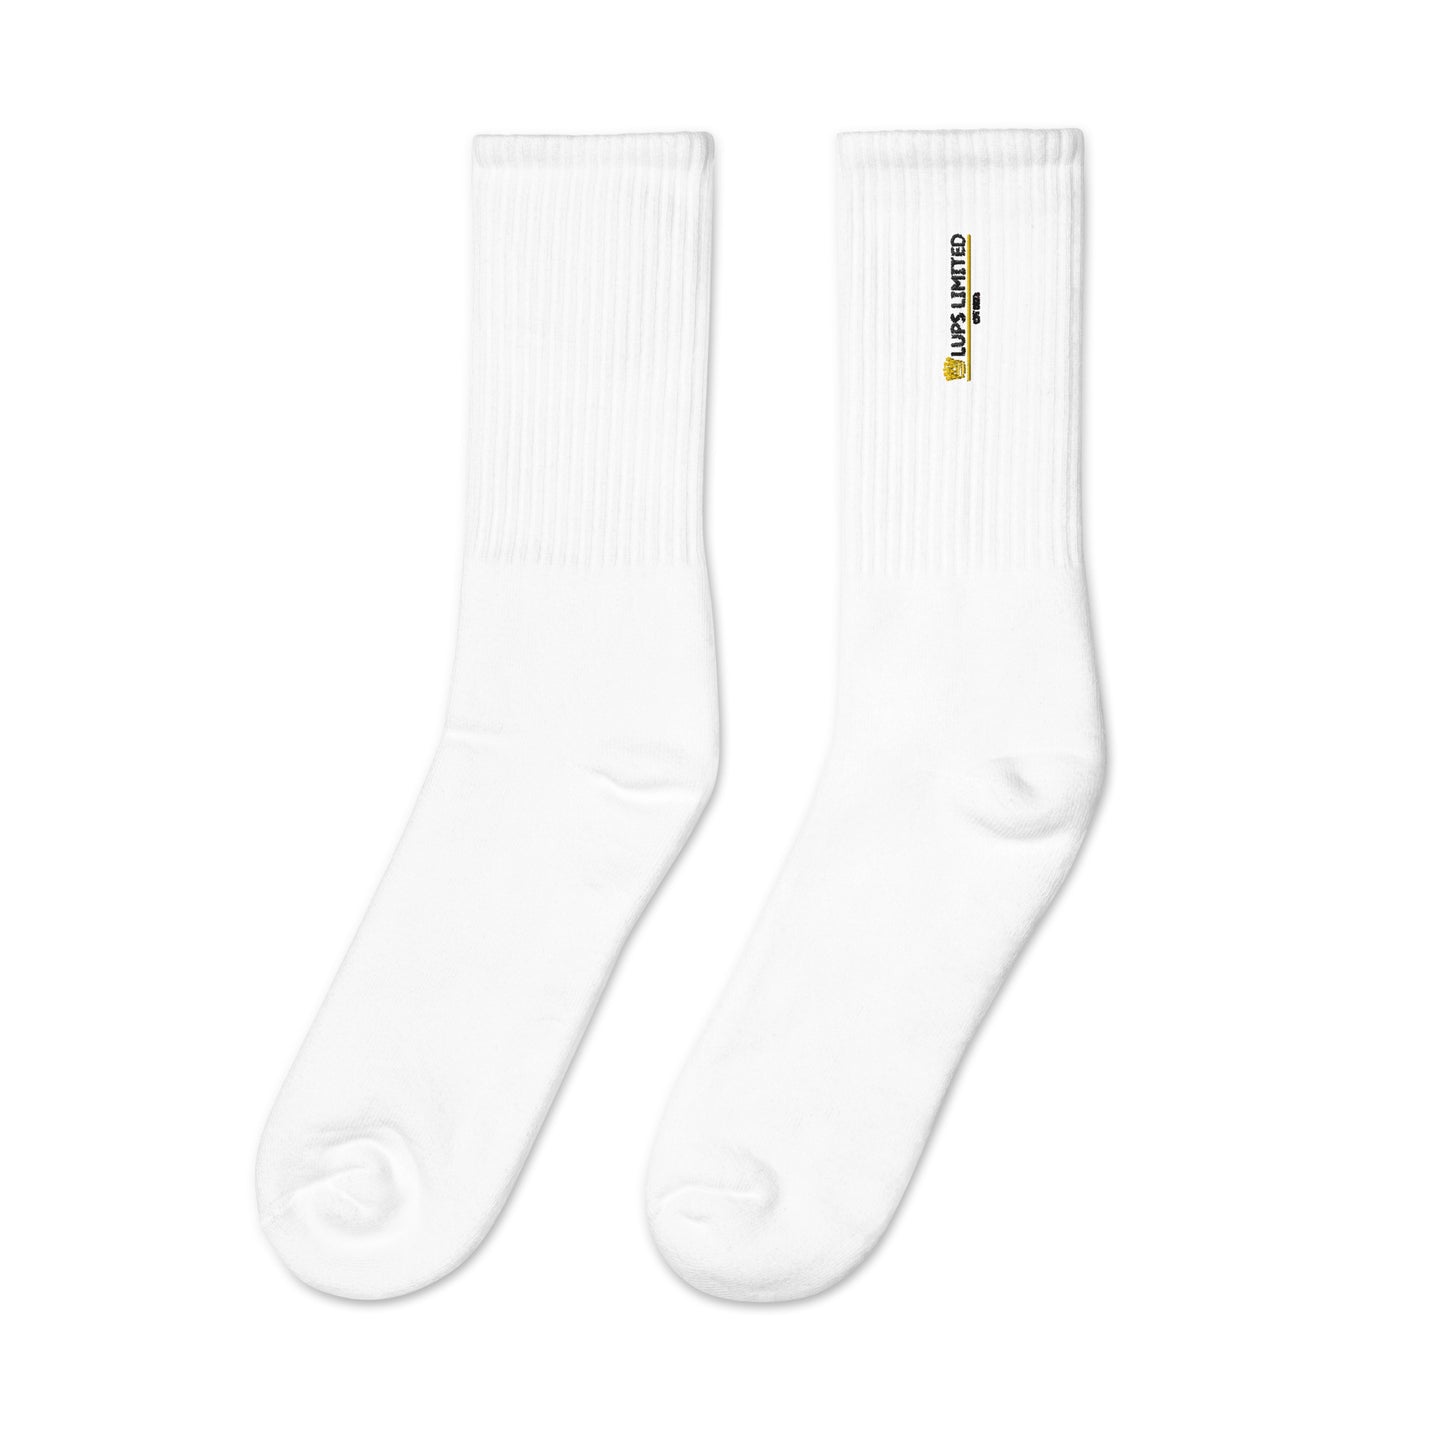 Lups Royal Socks